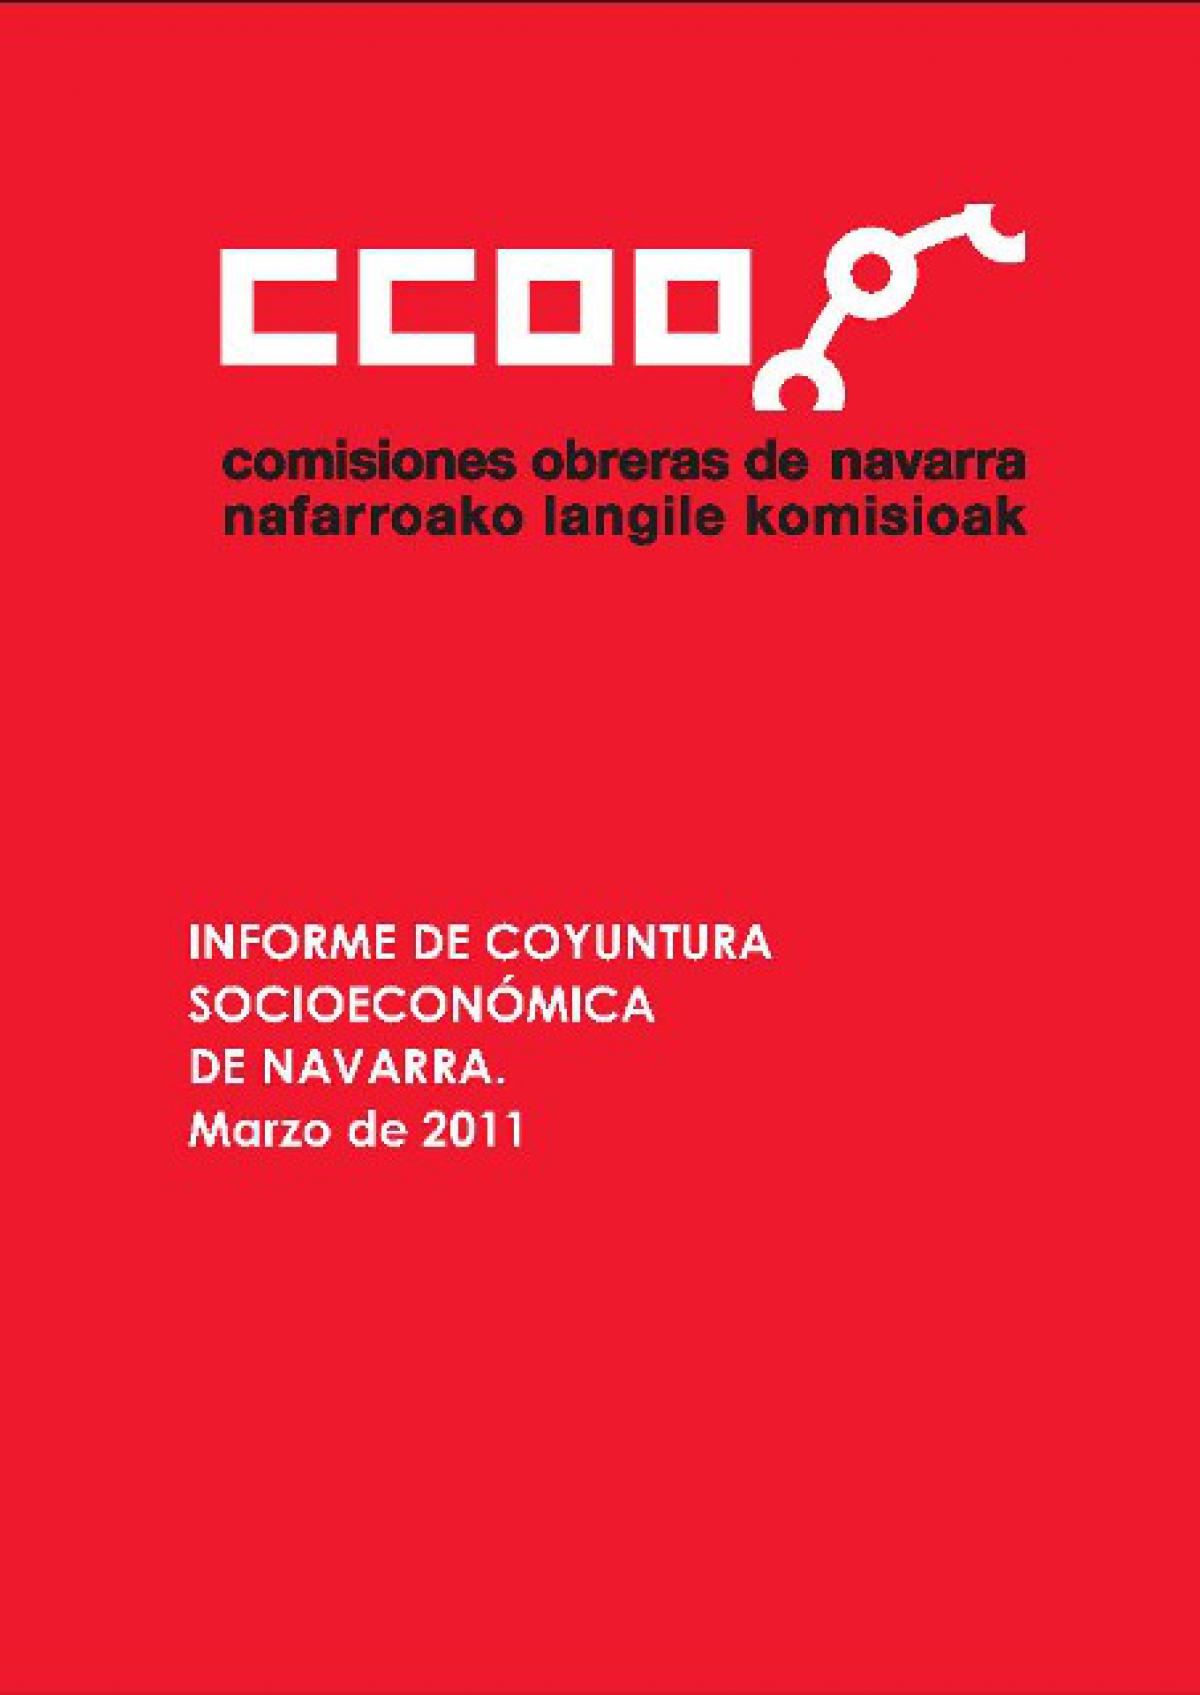 informe coyuntura socioeconmica de navarra. marzo 2011